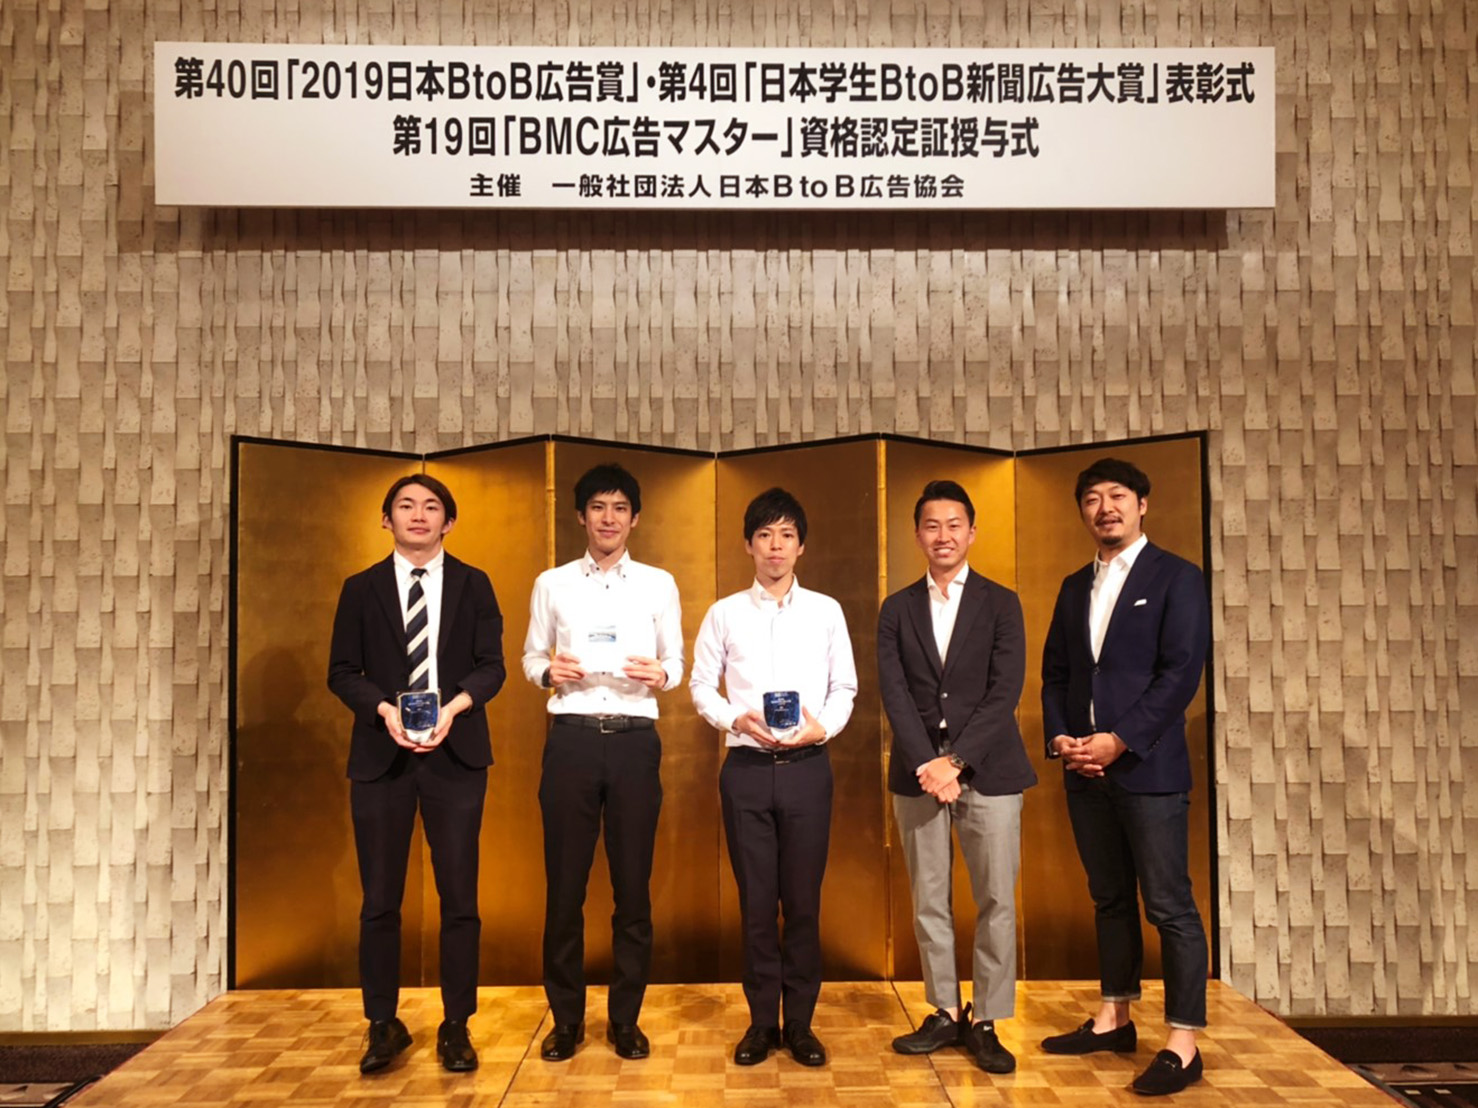 ▲小田急電鉄株式会社様（左から2番目・3番目のお二人）とパラドックスのメンバー